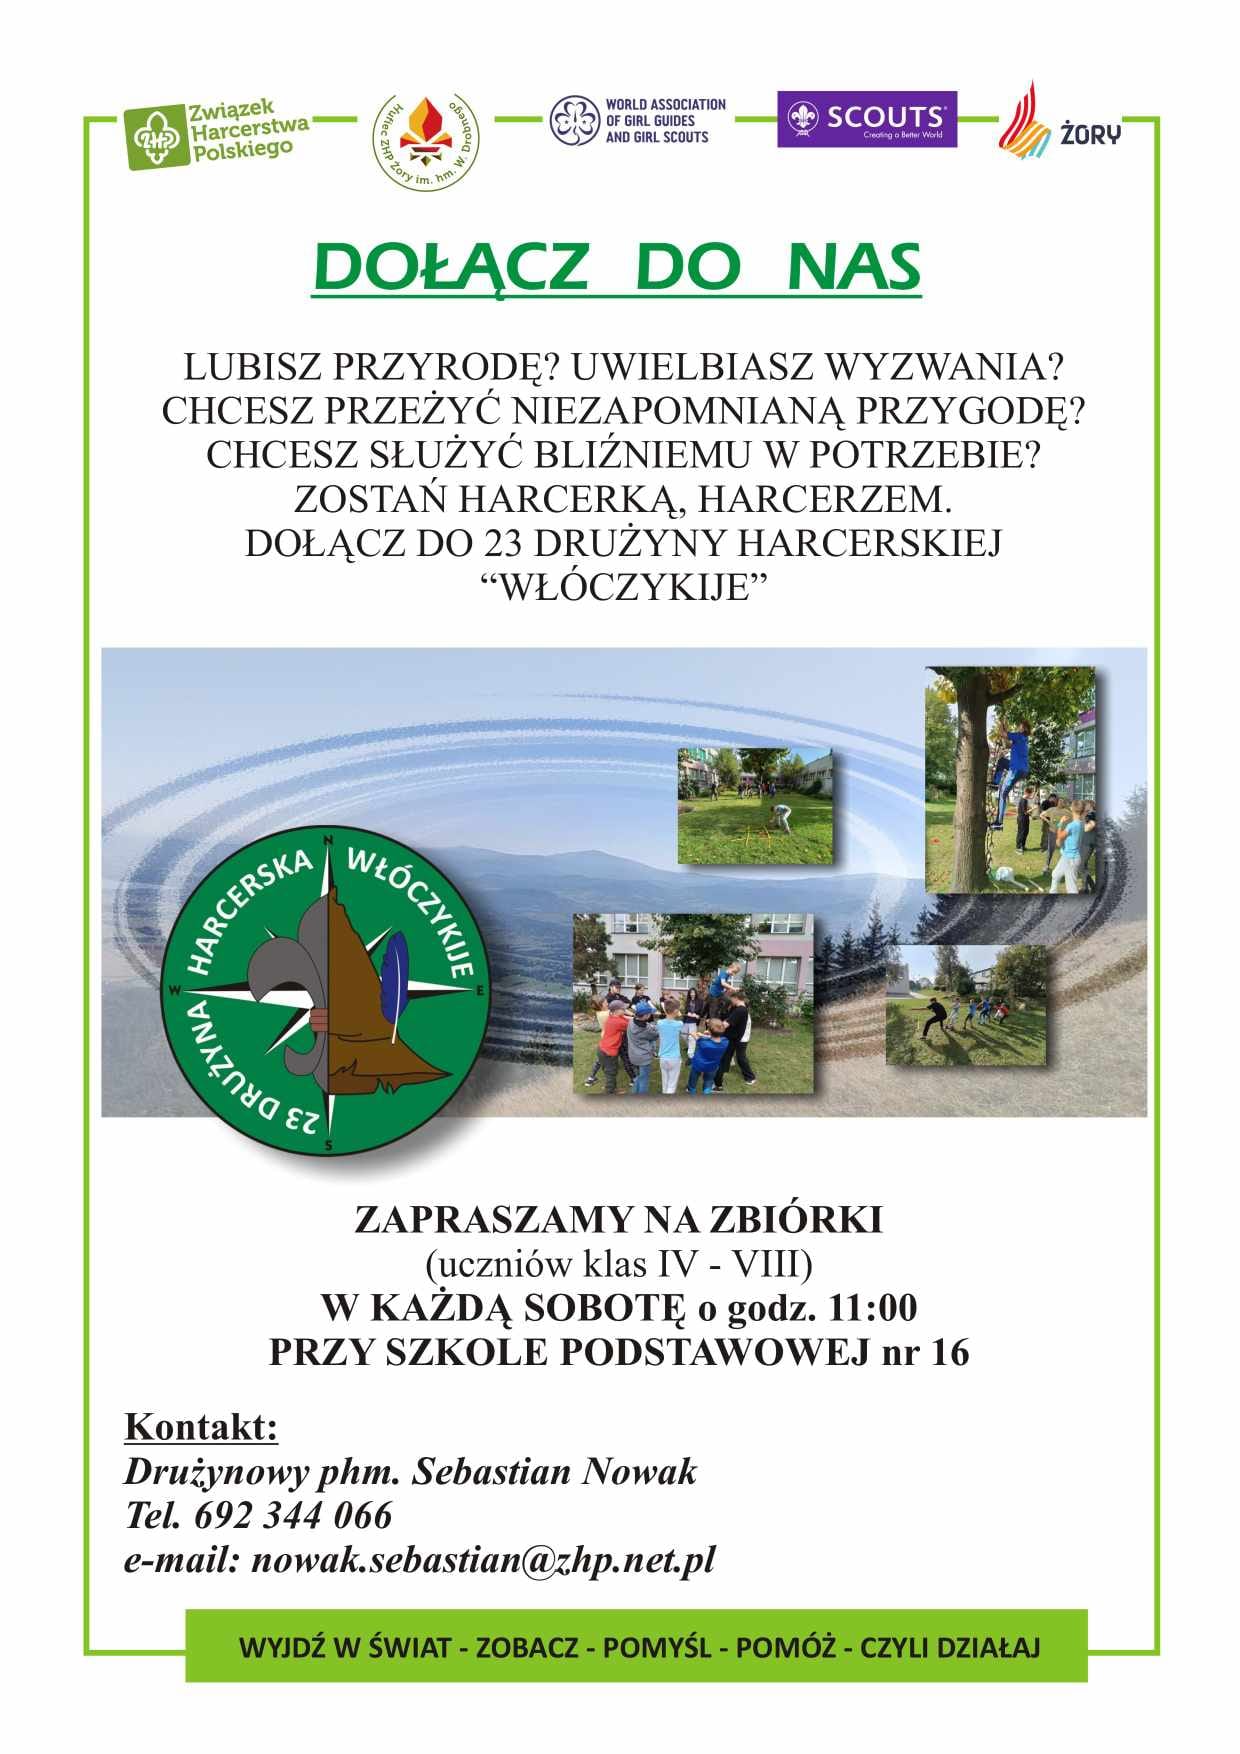 Plakat zachęcający do udziału w zbiórkach druzyny harcerskiej Włóczykije.